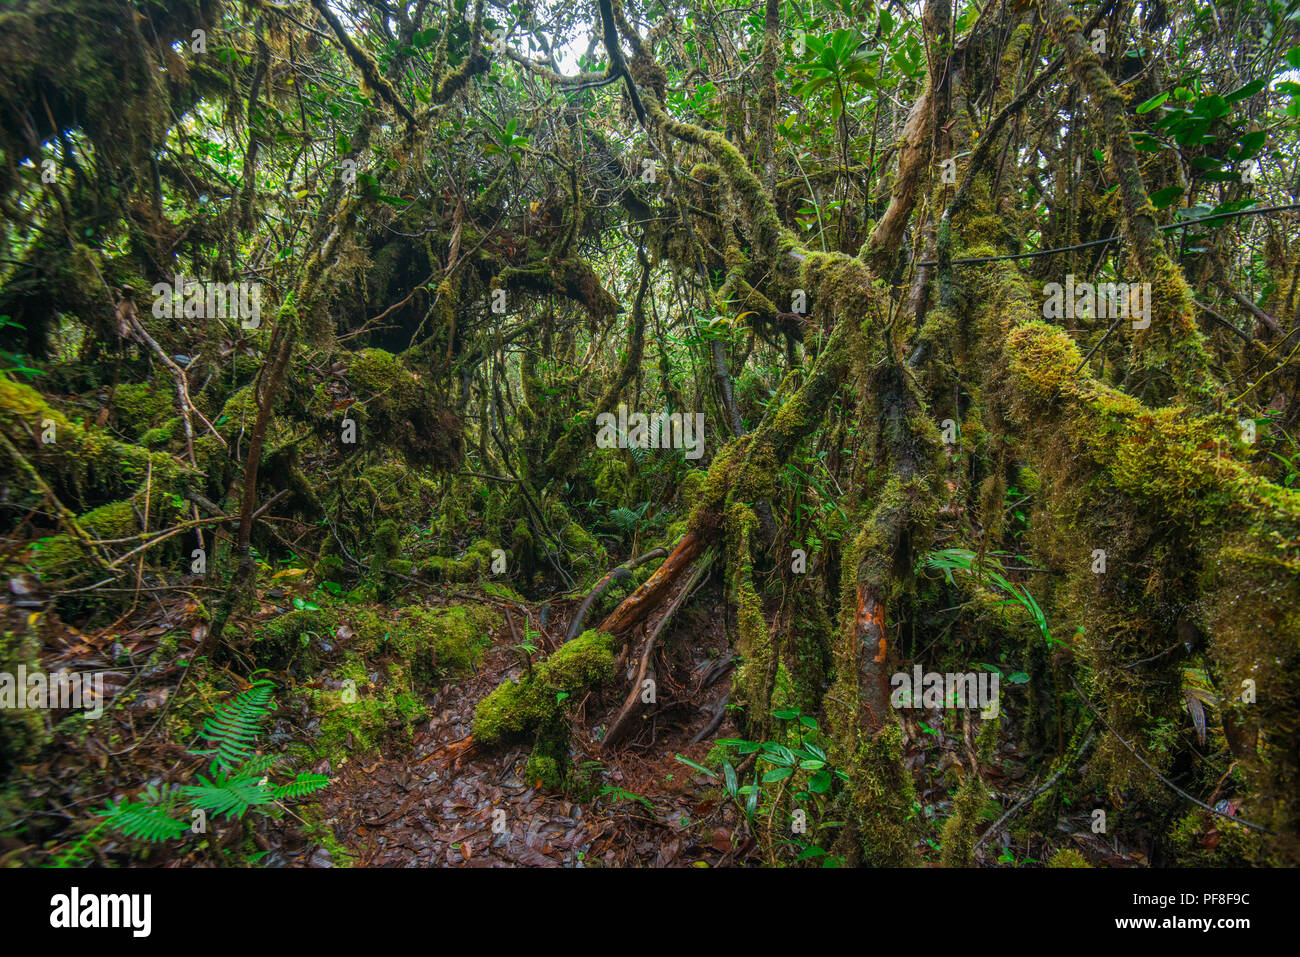 In montanen Heide Wald (nebelwald) mit vielen verkümmerten Bäume in Moos bedeckt, in der Nähe der Gipfel des Mount Trusmadi, Sabah, Malaysia (Borneo) Stockfoto